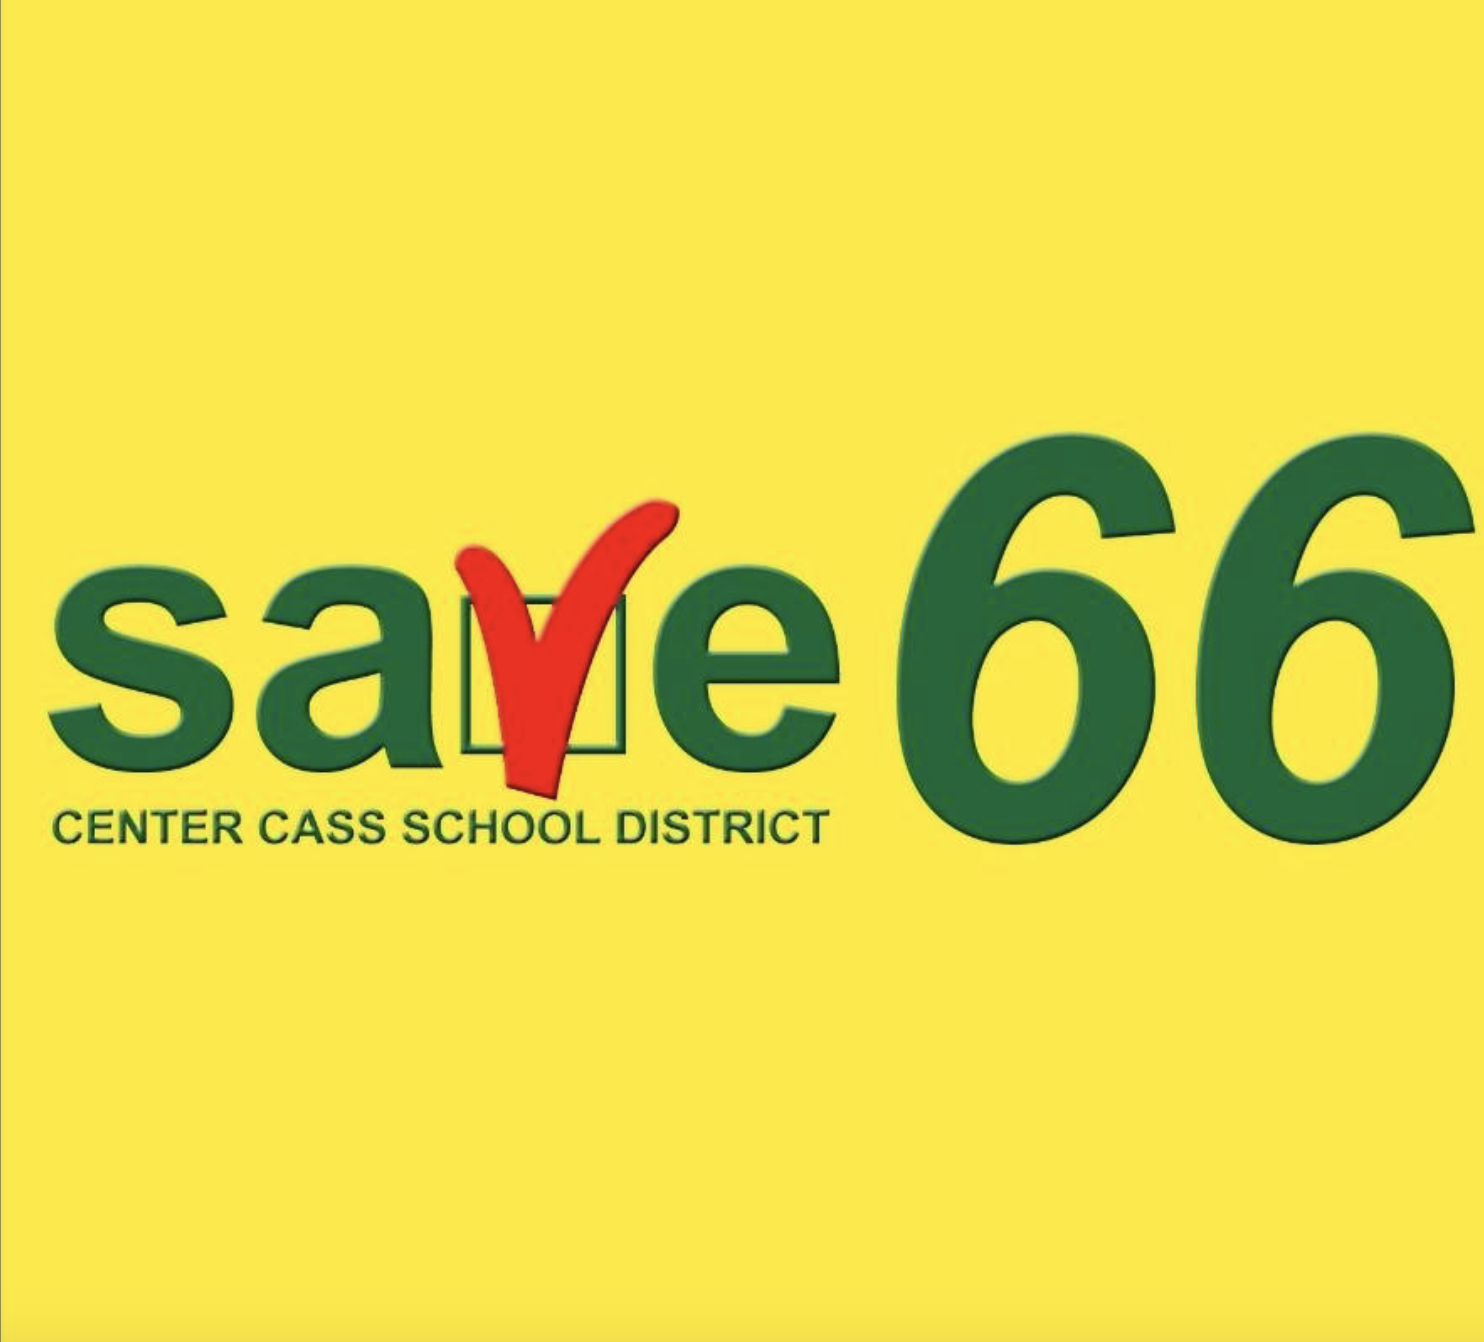 Save66